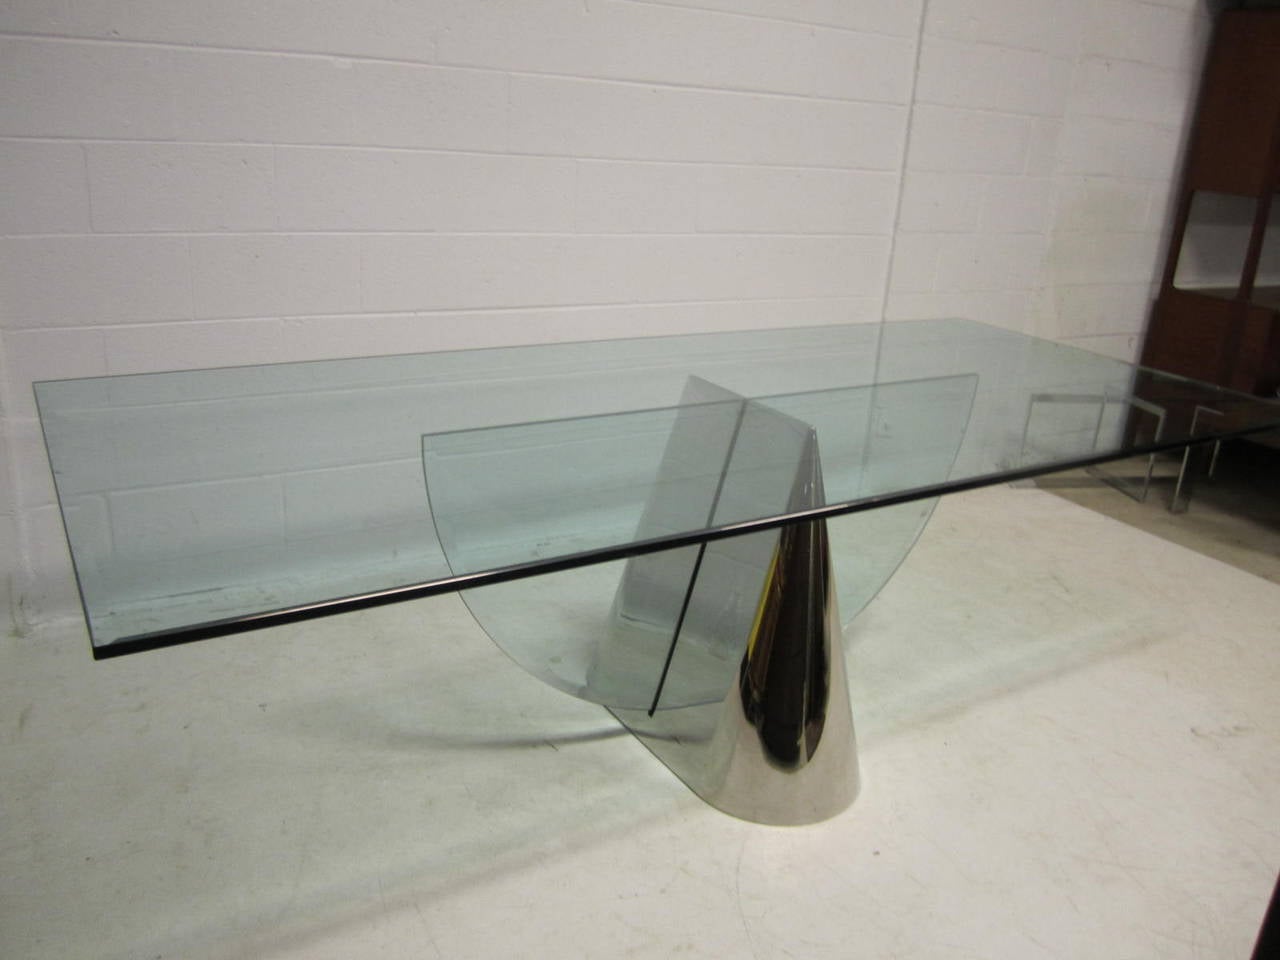 Wenn es um schickes und raffiniertes Glasdesign geht, ist dieser Tisch der Gewinner. Minimalistisch, visuell aufregend und wunderschön konstruiert, ist es wirklich ein außergewöhnliches Design. Dieser schöne Tisch ist in einem ausgezeichneten